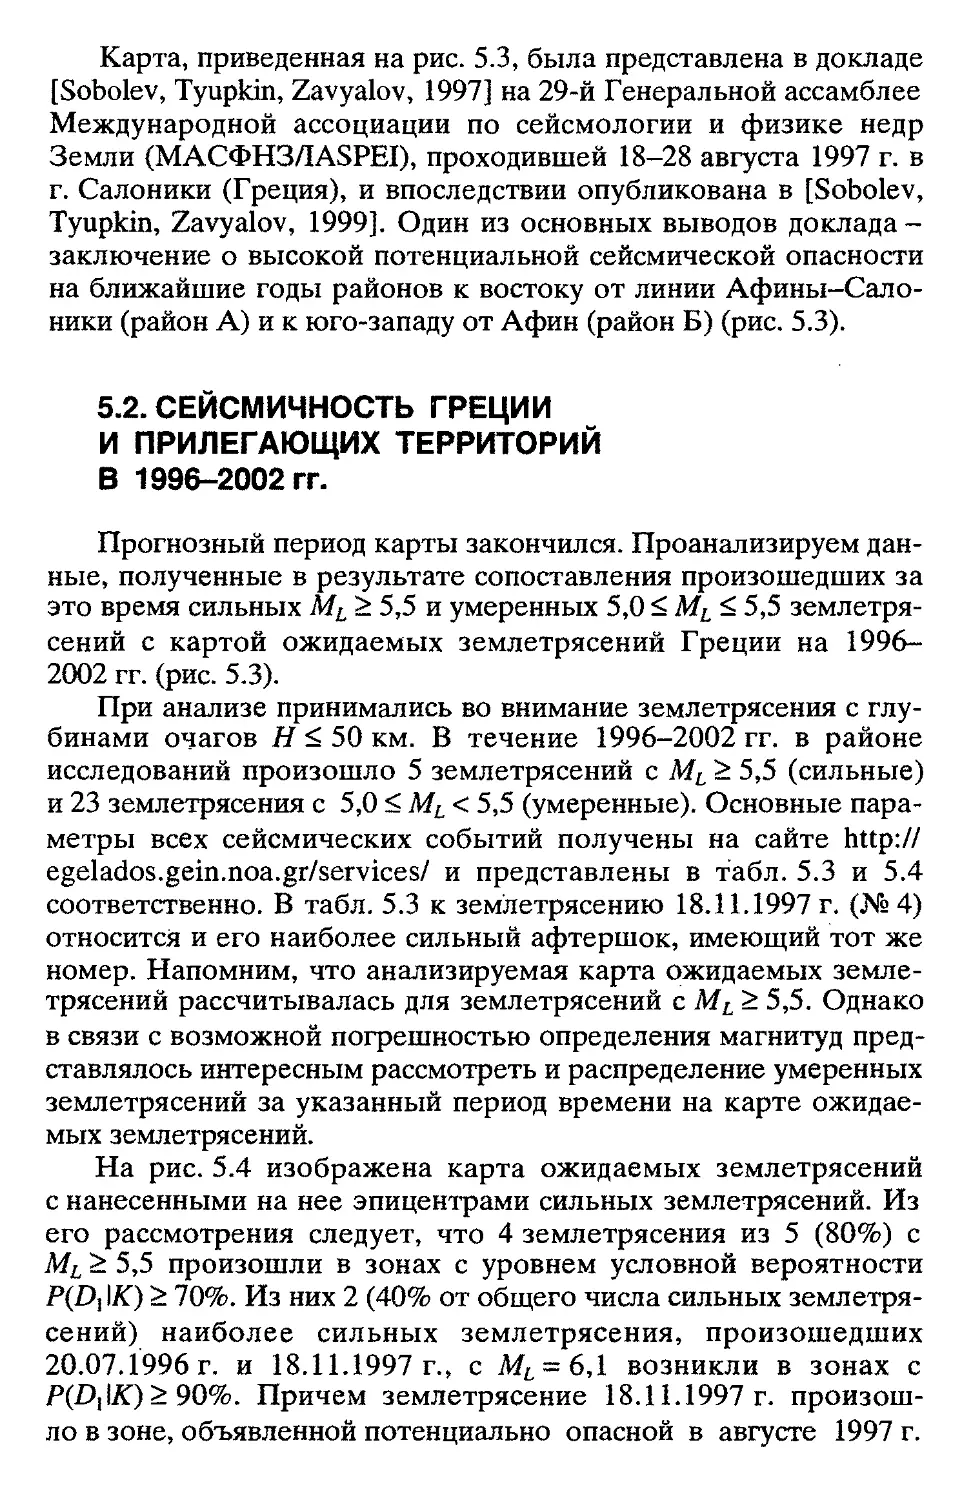 5.2. Сейсмичность Греции и прилегающих территорий в 1996- 2002 гг.